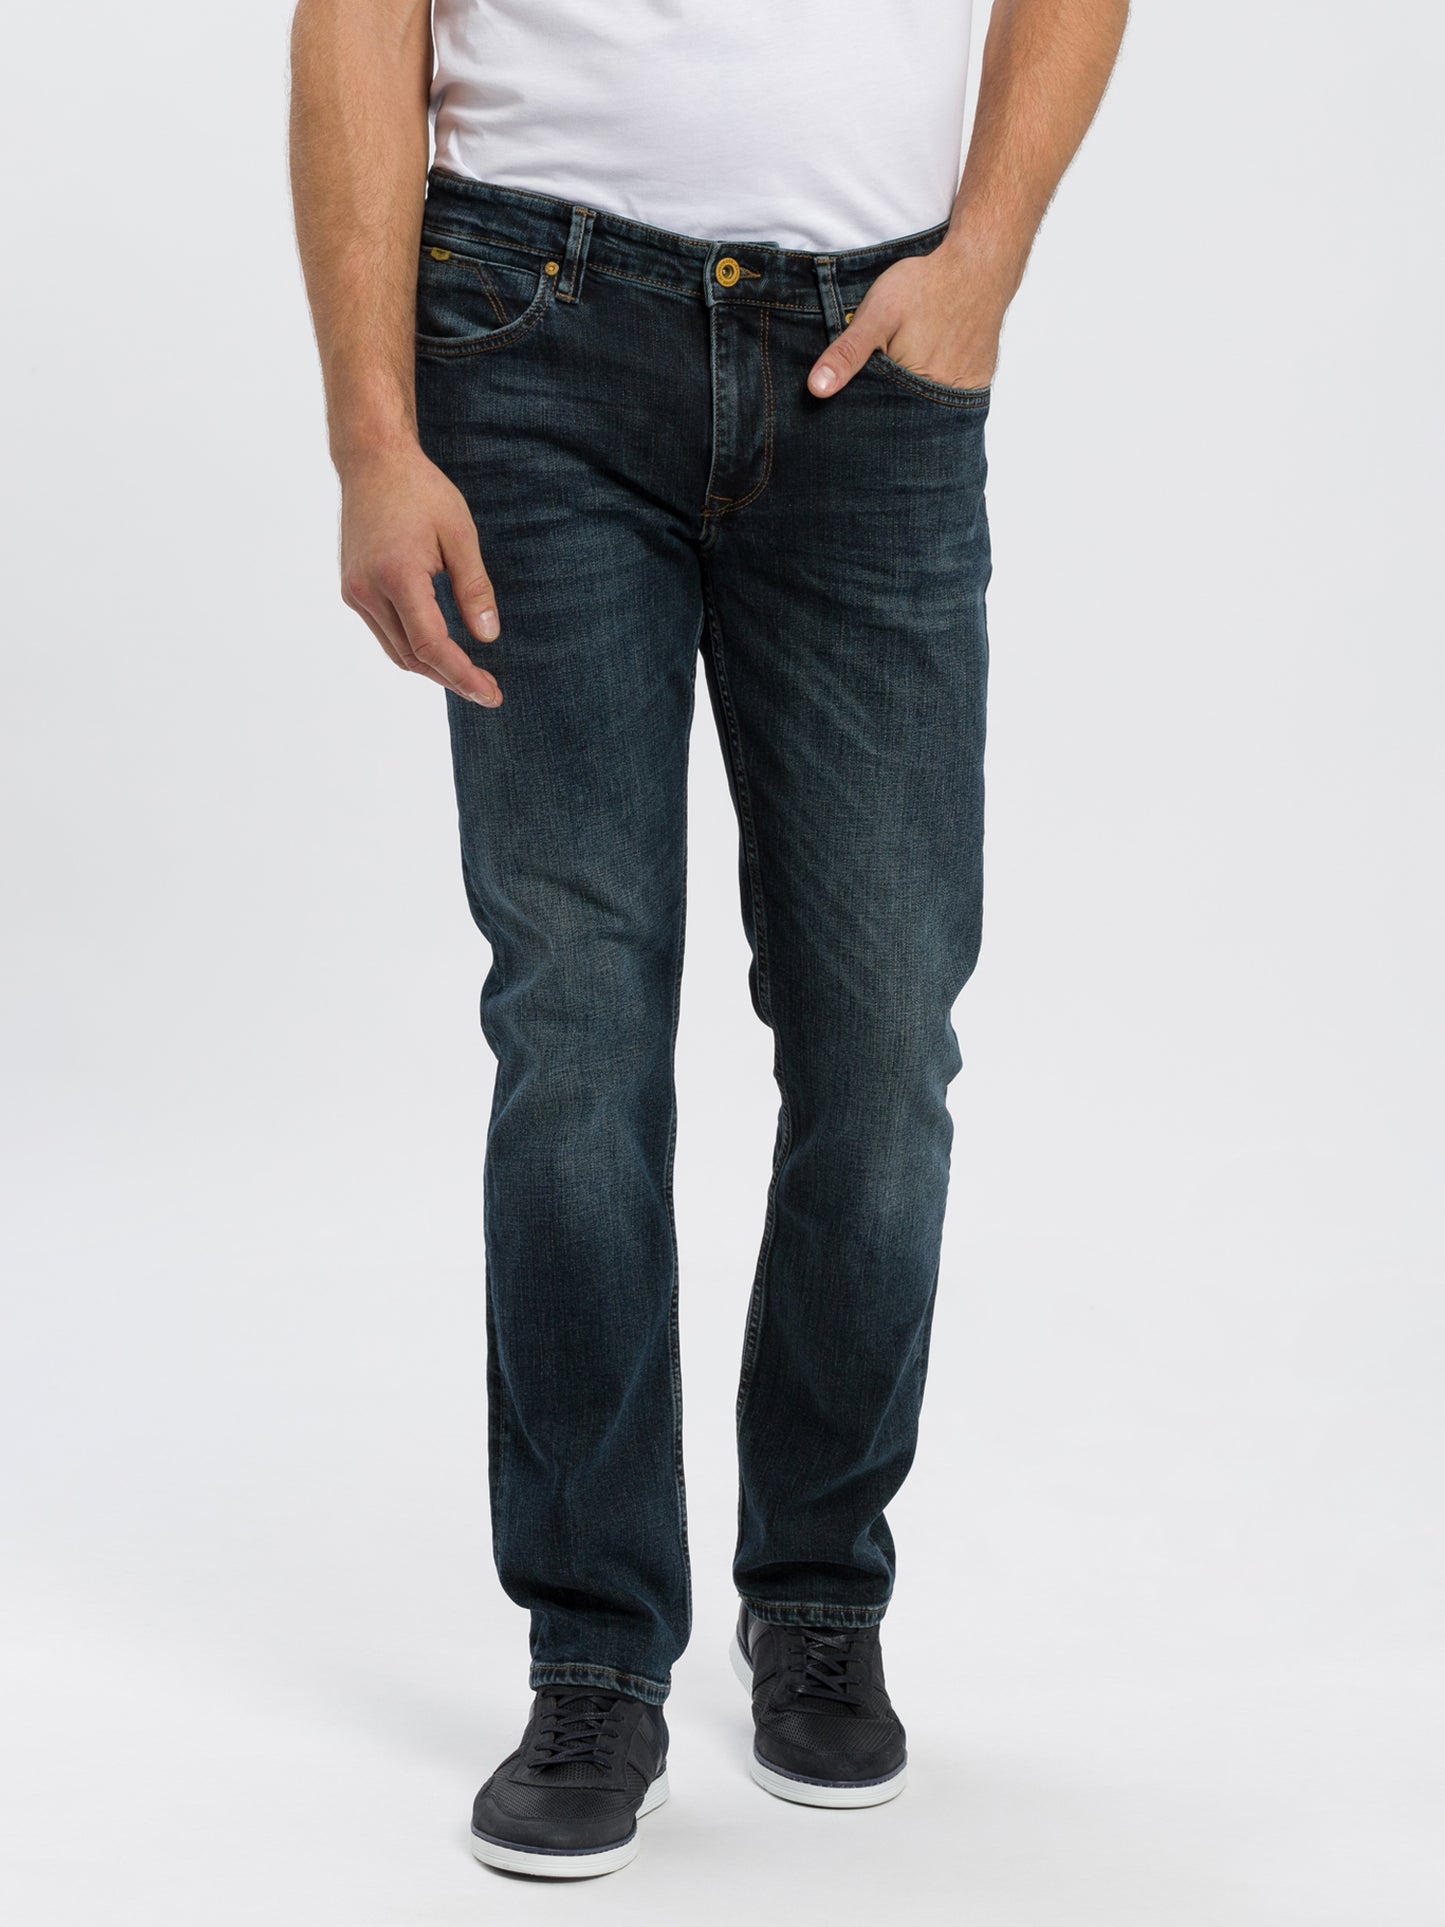 Dylan Herren Jeans Regular Fit Regular Waist Straight Leg dunkelblau